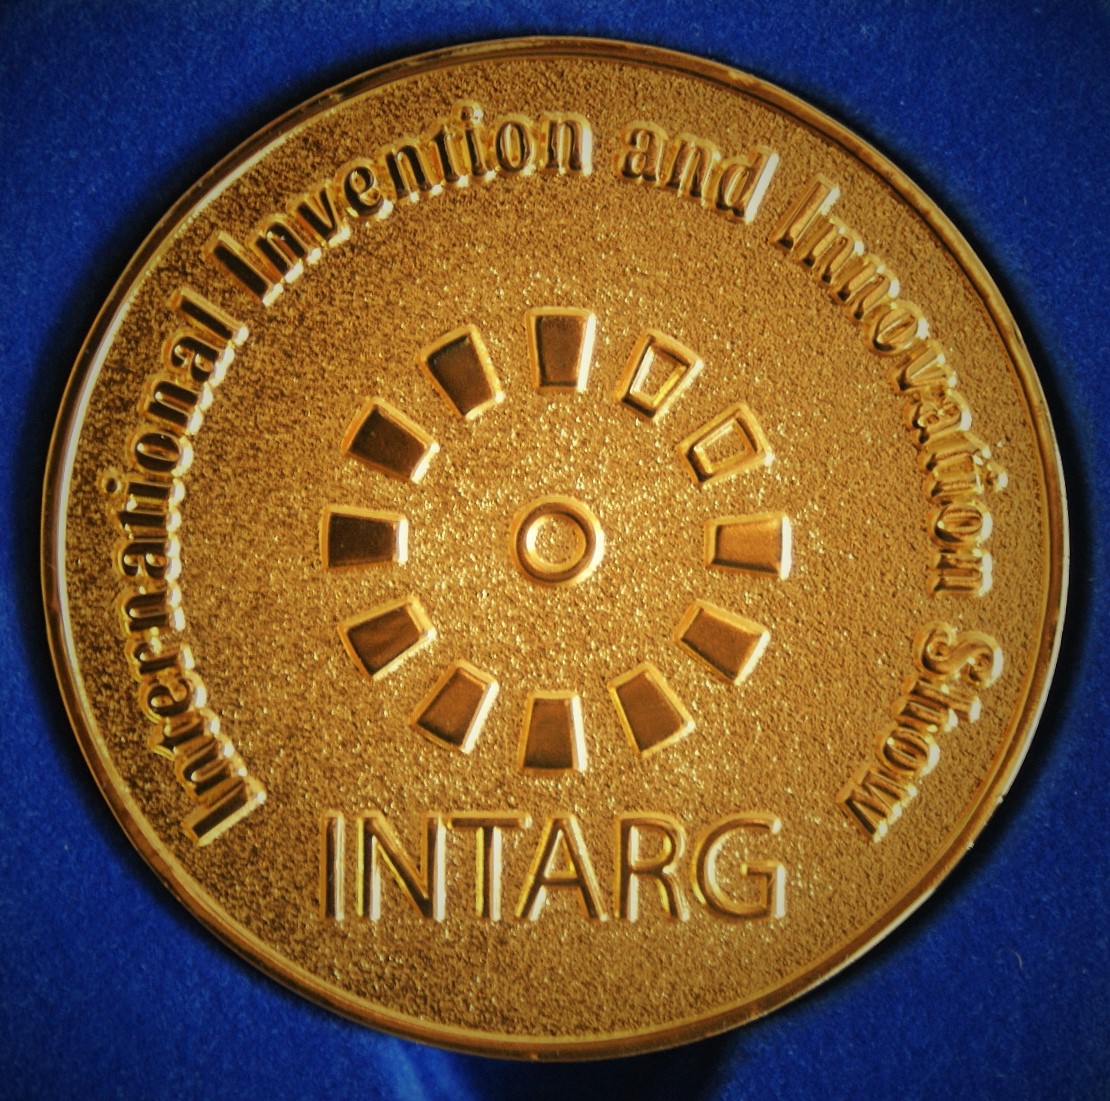 Zdjęcie medalu targów INTARG